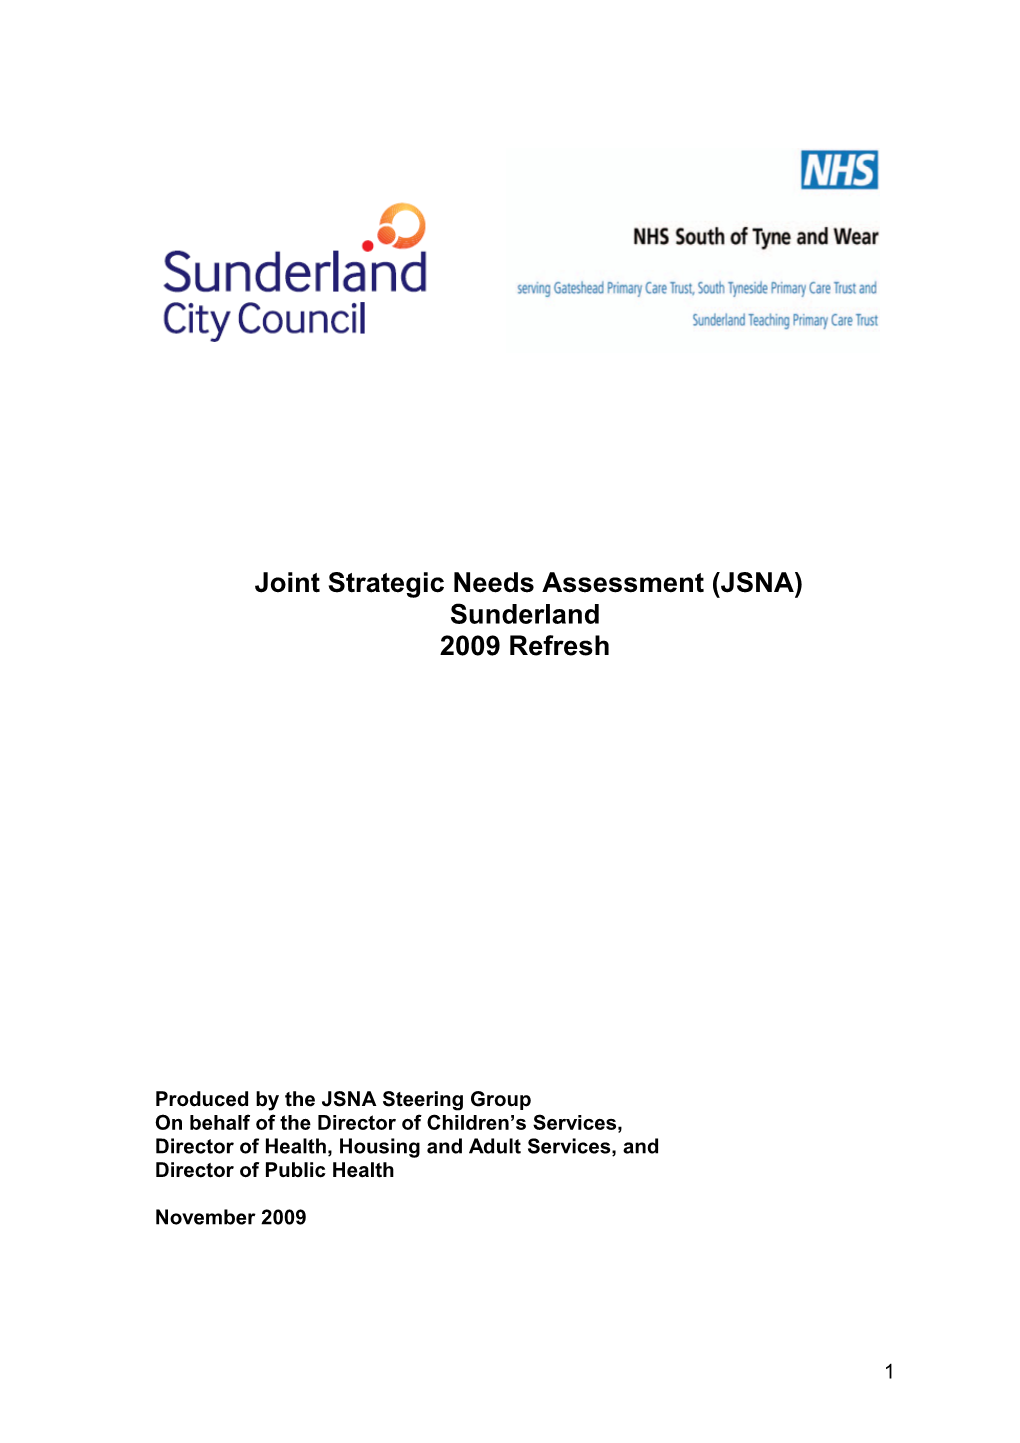 Joint Strategic Needs Assessment